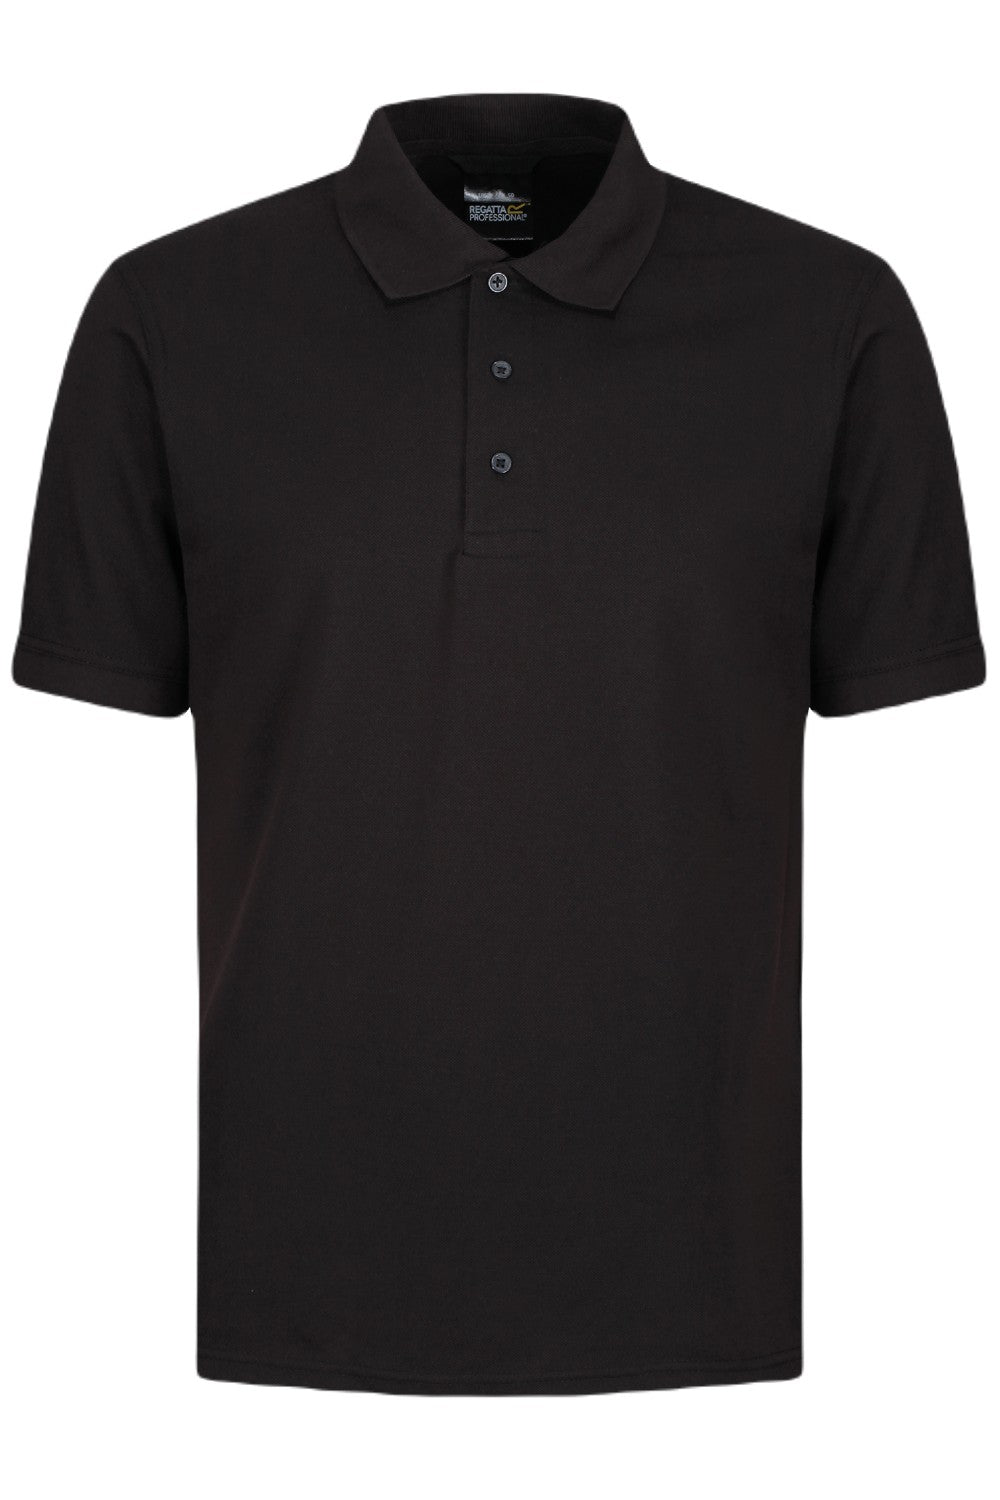 Regatta Classic Polo Shirt In Black 